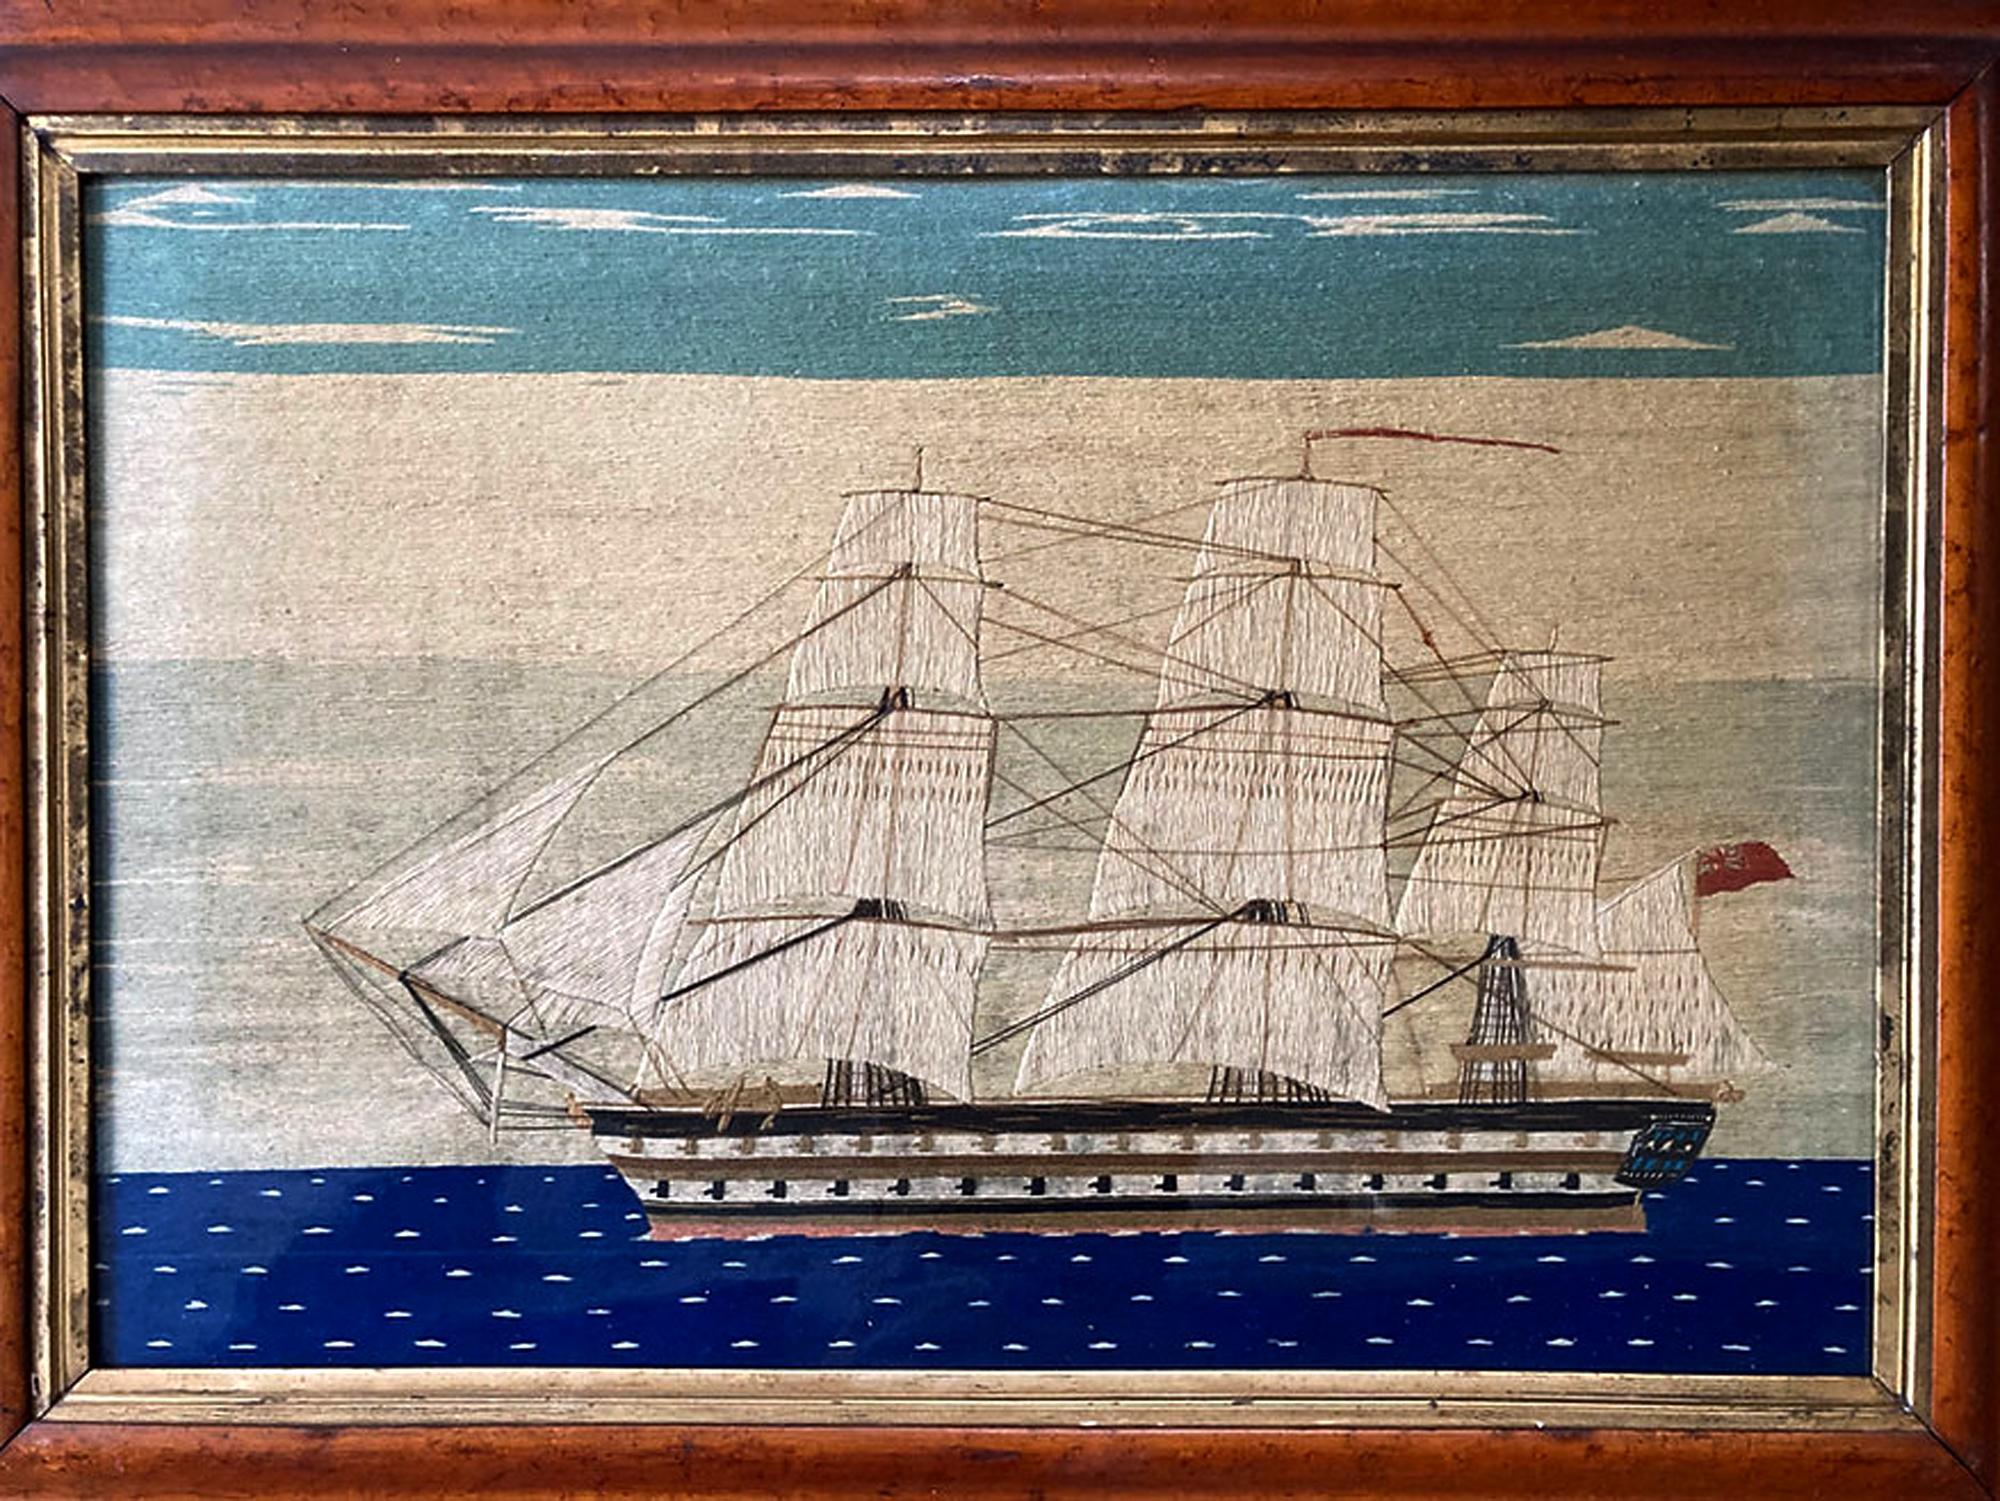 Große Wollarbeit eines britischen Seglers der HMS Brunswick,
CIRCA 1865

Das große Seemannsgarn zeigt das Bild eines Schlachtschiffs zweiter Klasse der Royal Navy. Dem Vernehmen nach handelt es sich um die im Juni 1855 vom Stapel gelaufene HMS